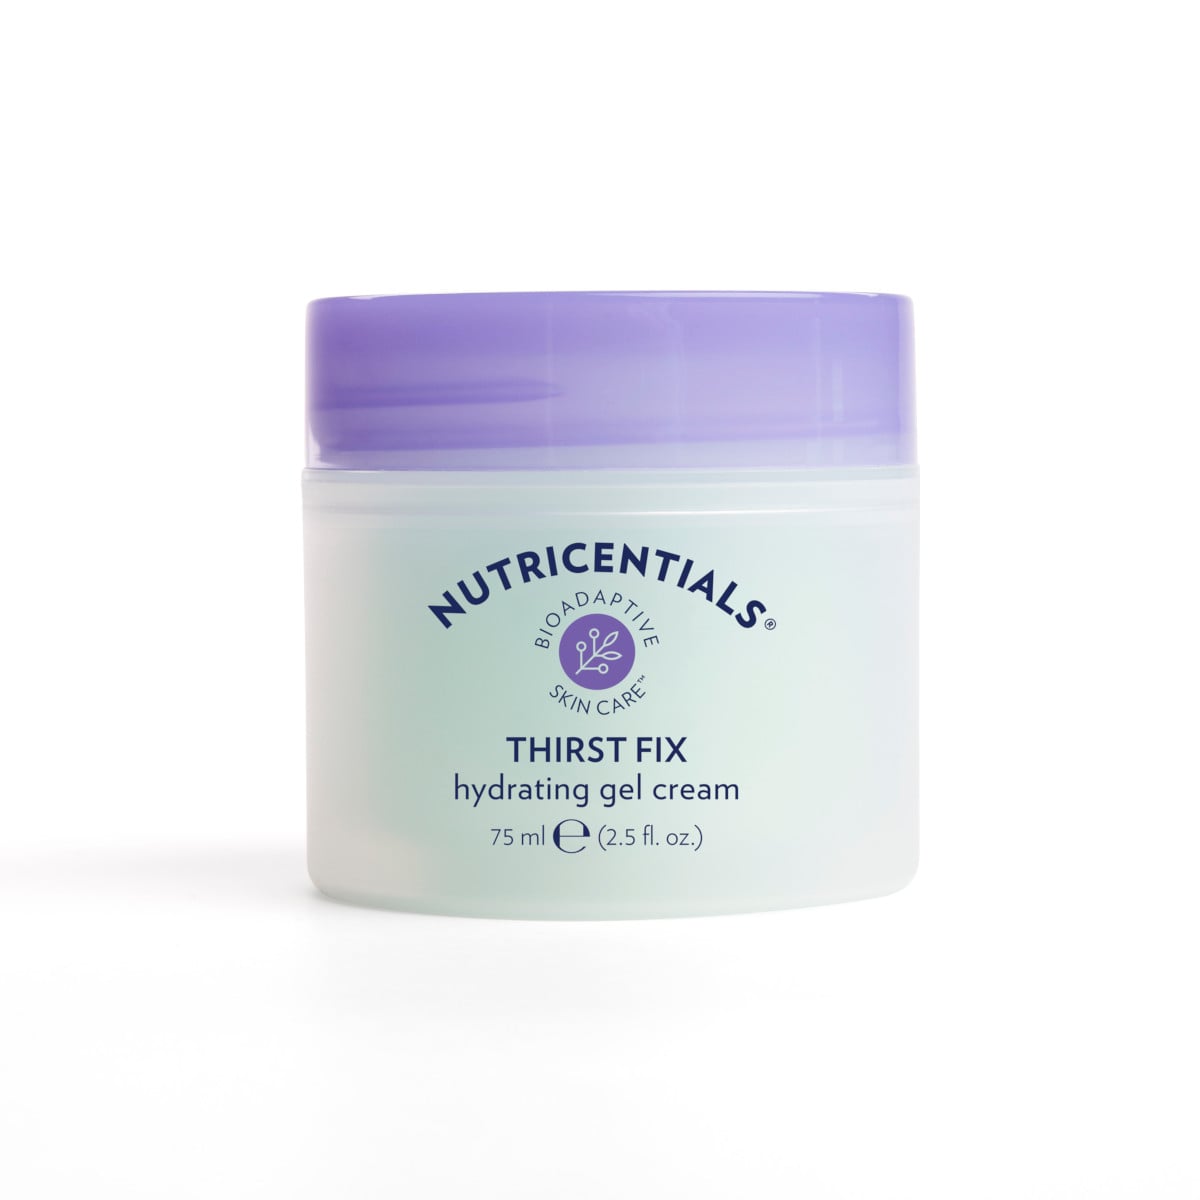 Produktfotografie. Front: Nutricentials (Bioadaptive Skincare) Thirst Fix Hydrating Gel Cream (Dose mit Schraubverschluss, je 75ml)